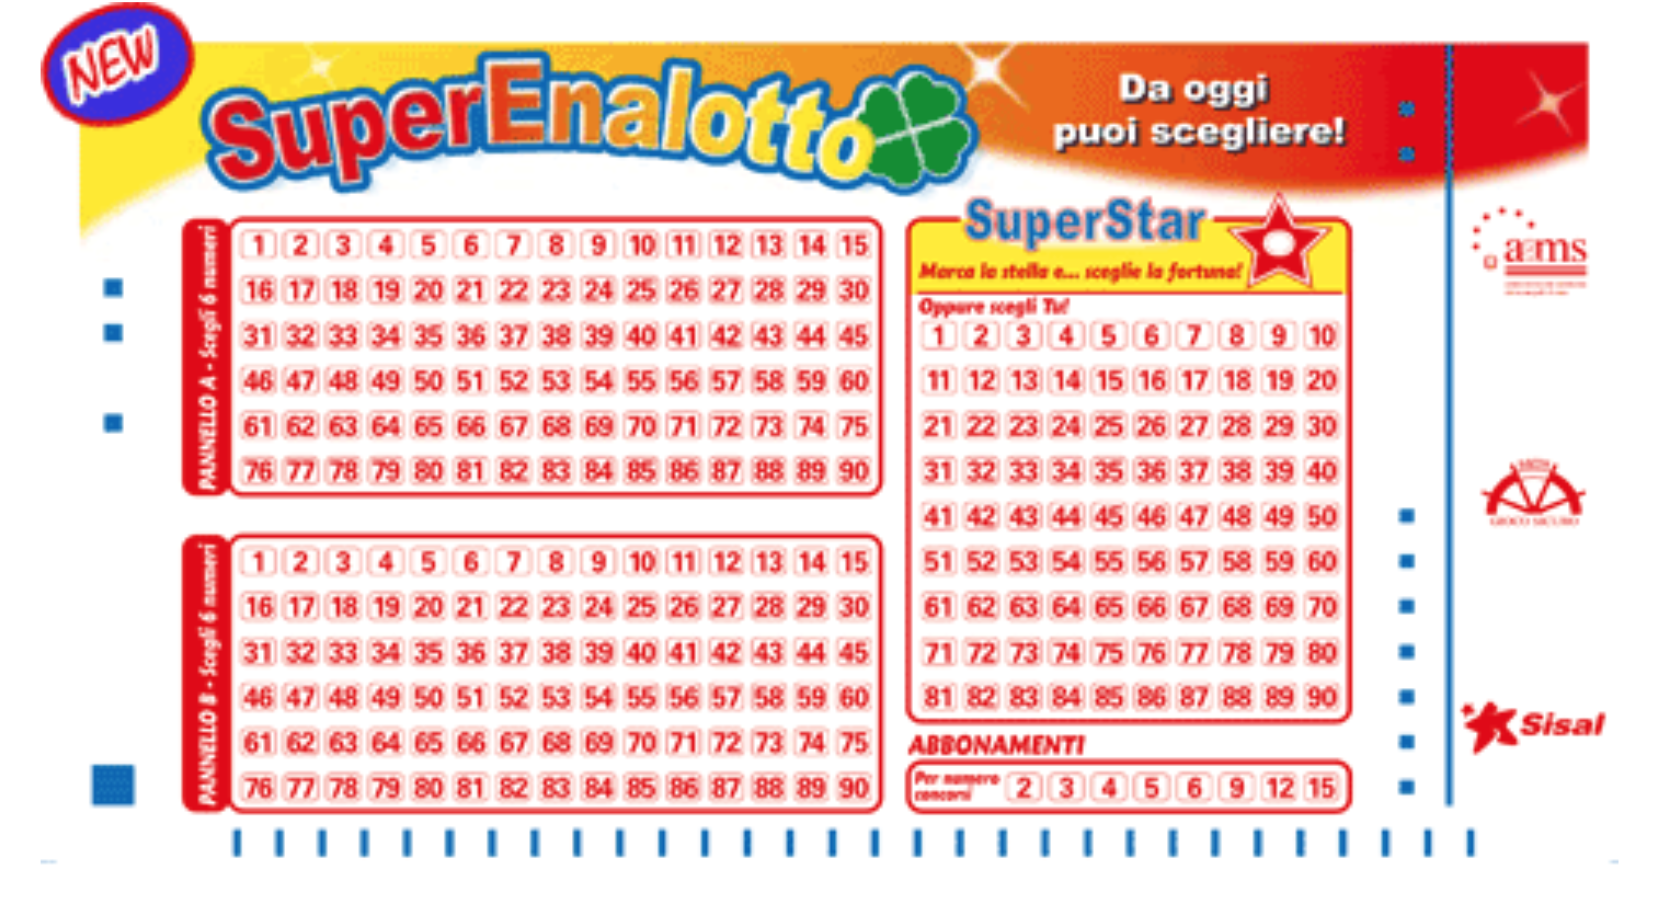 Gerador de números de loteria superena da Itália